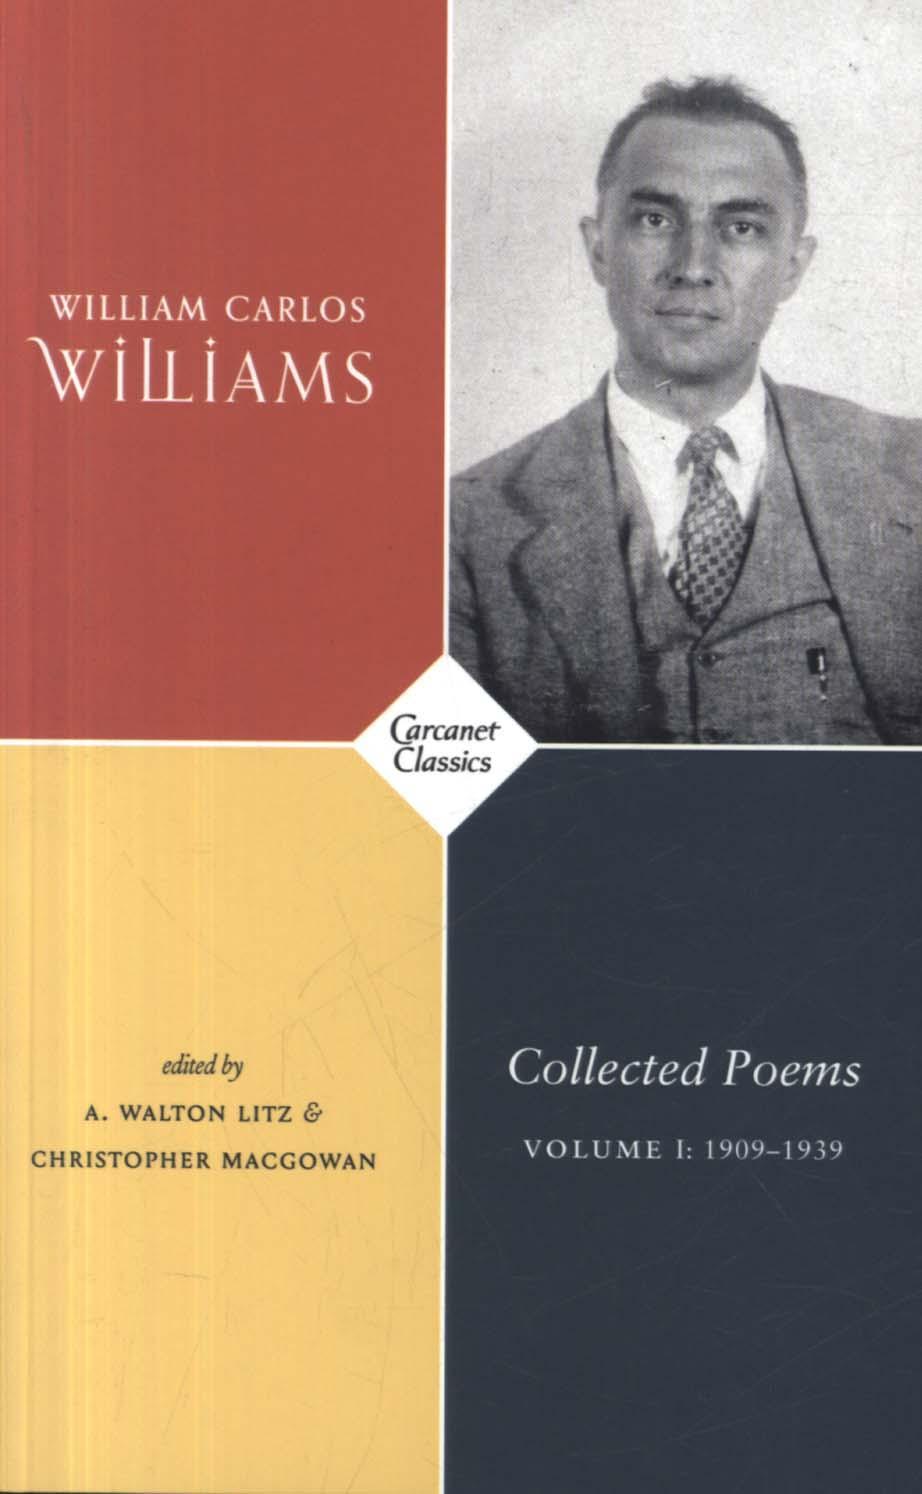 Collected Poems Volume I - William Carlos Williams